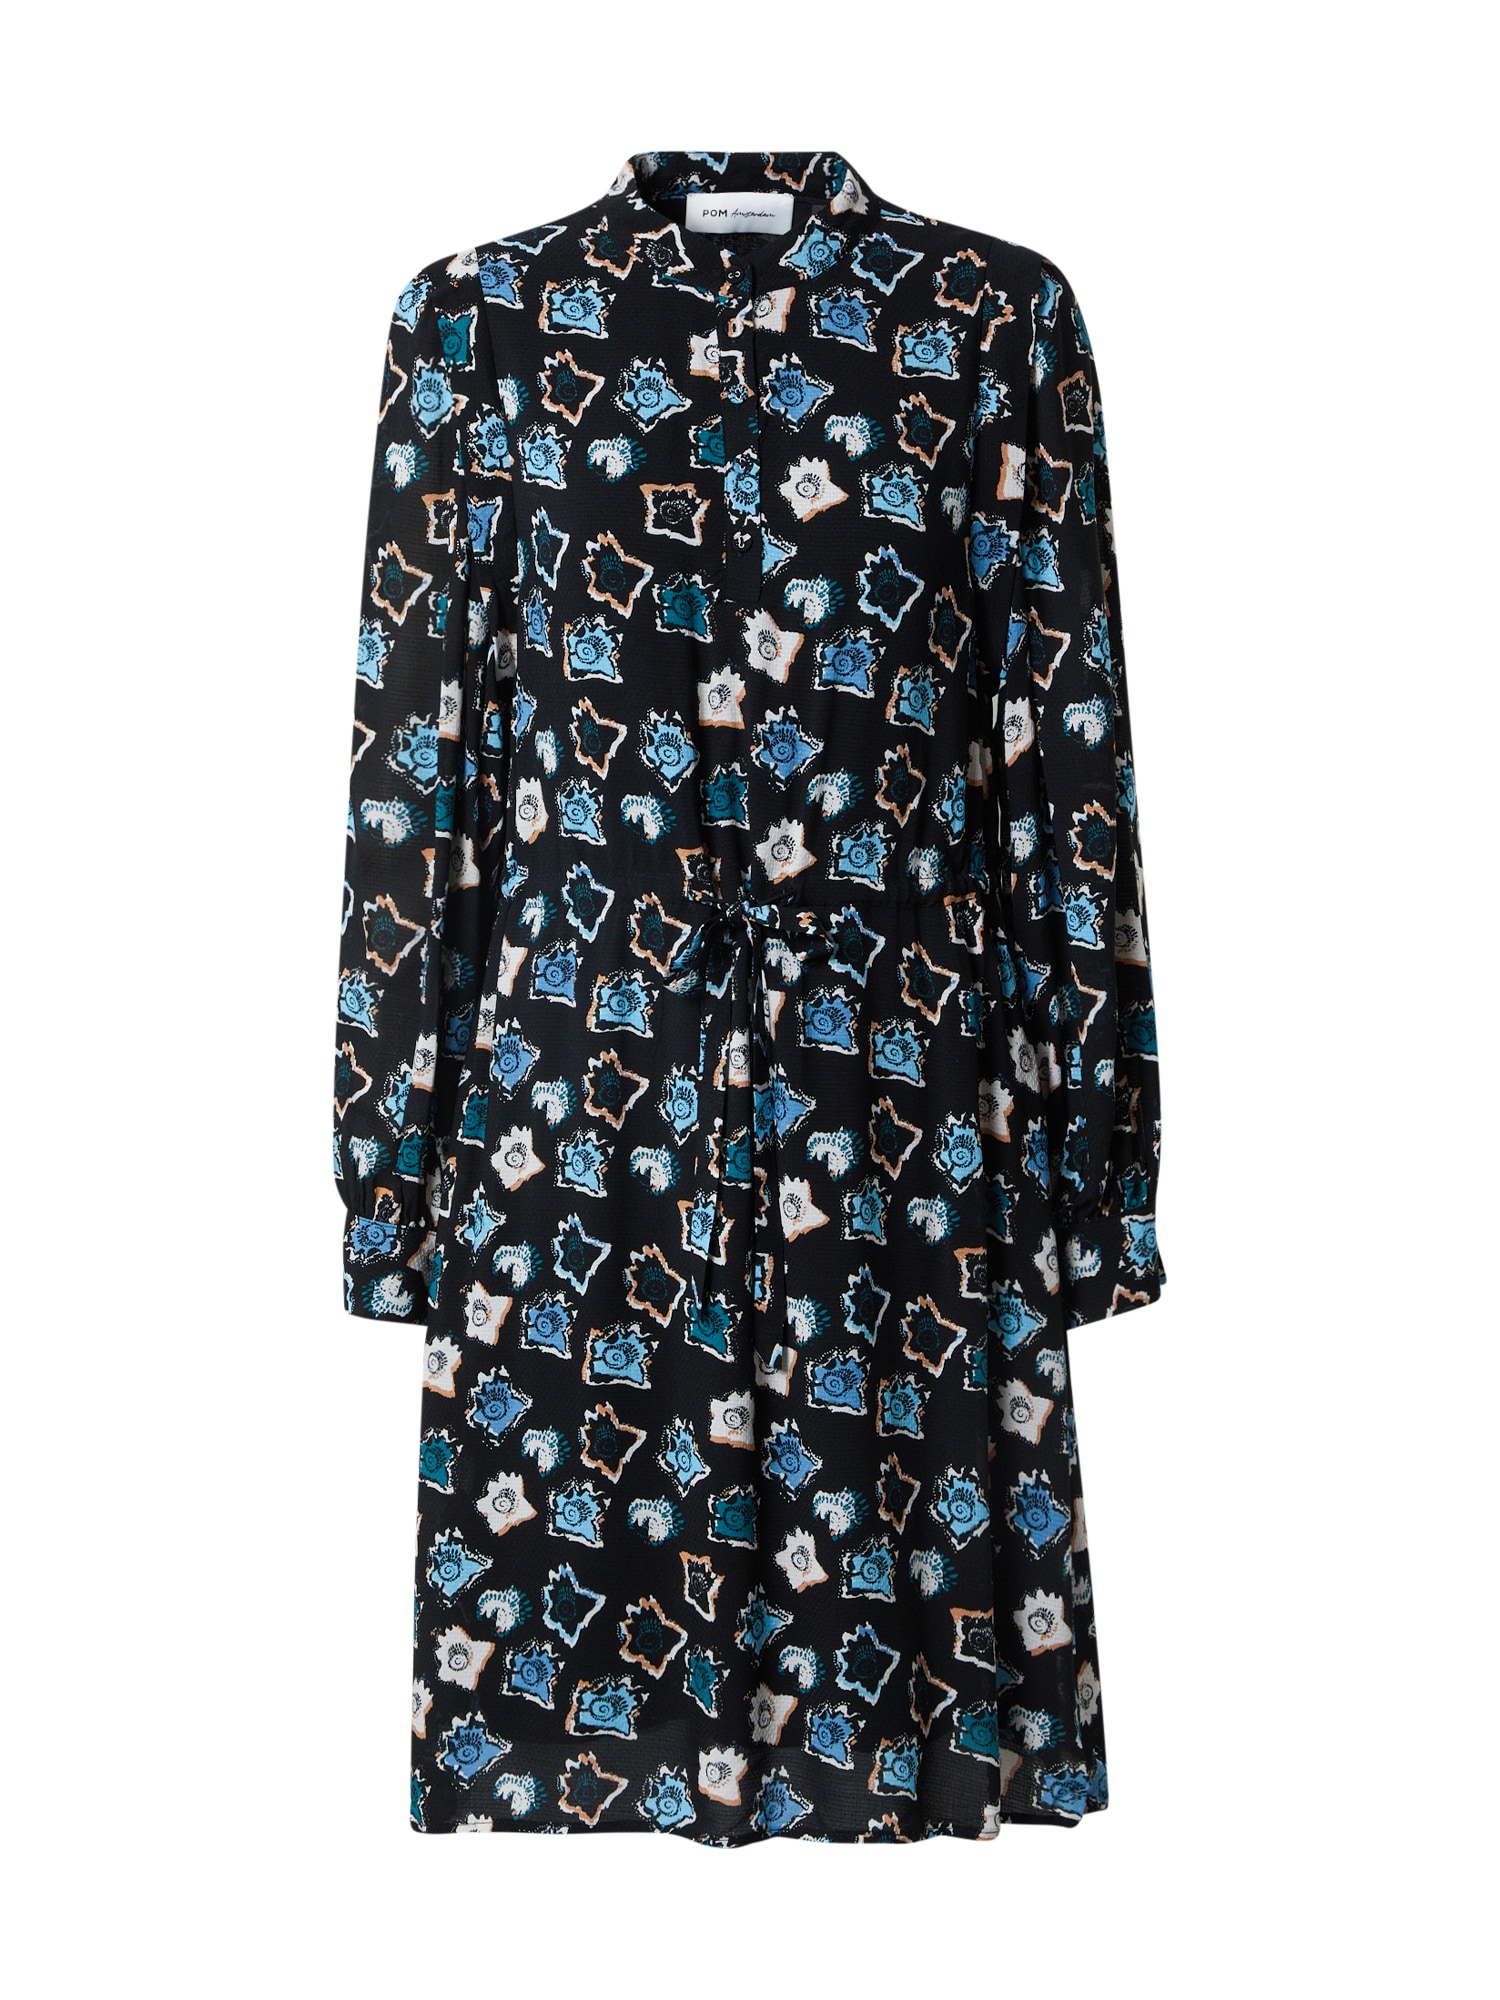 POM Amsterdam Palaidinės tipo suknelė gelsvai pilka spalva / šviesiai mėlyna / juoda / balta